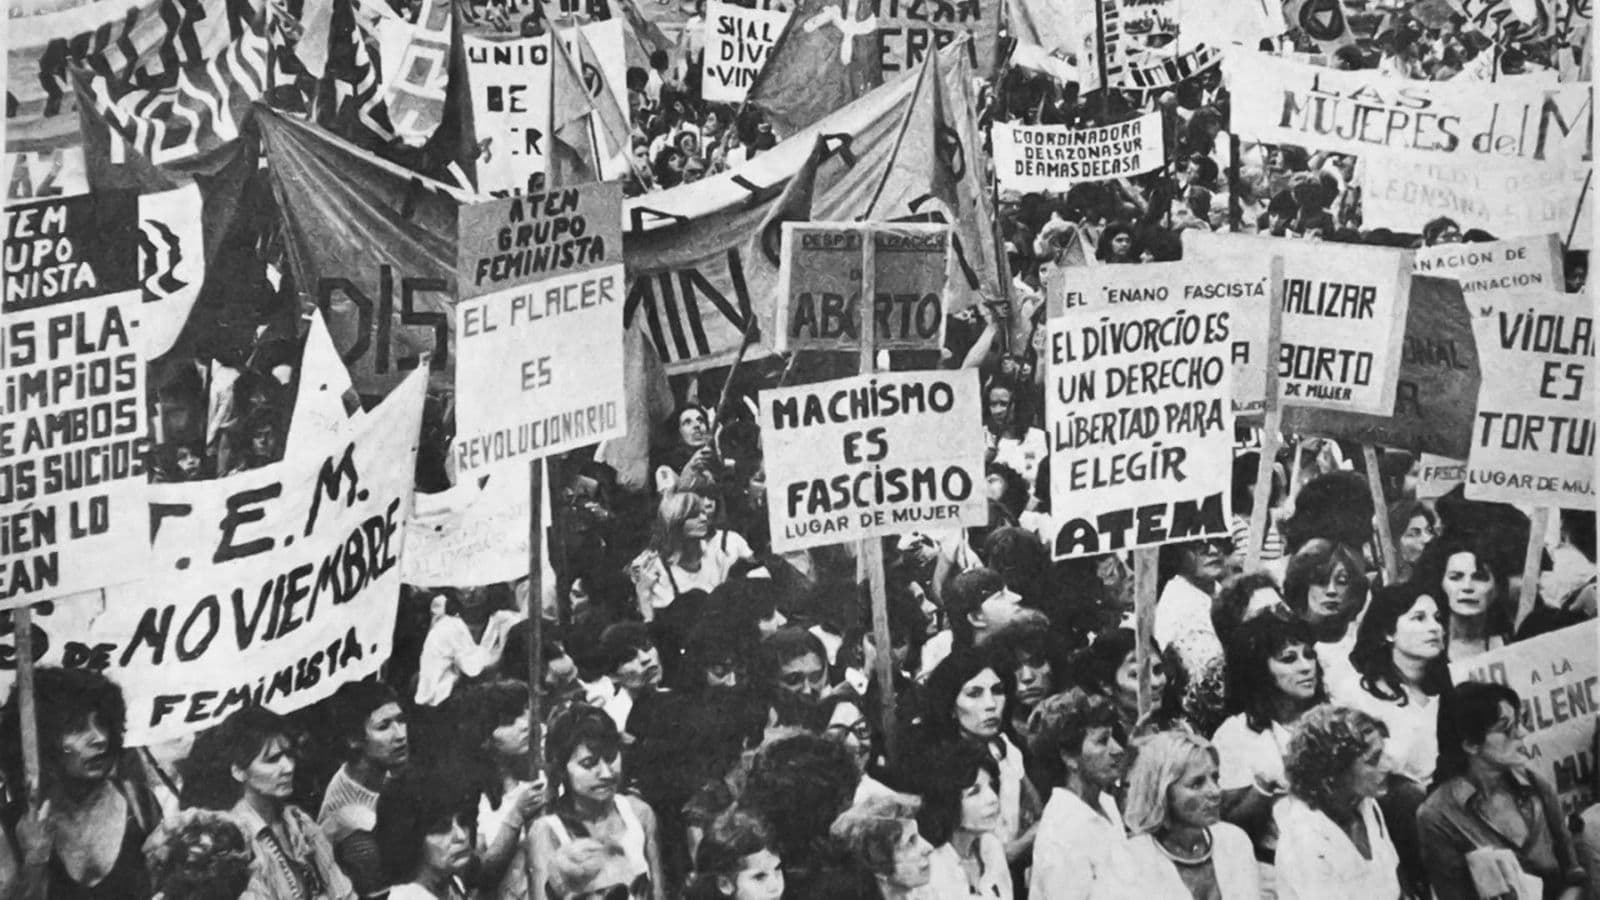 Feminist demonstration in Argentina, XX century.